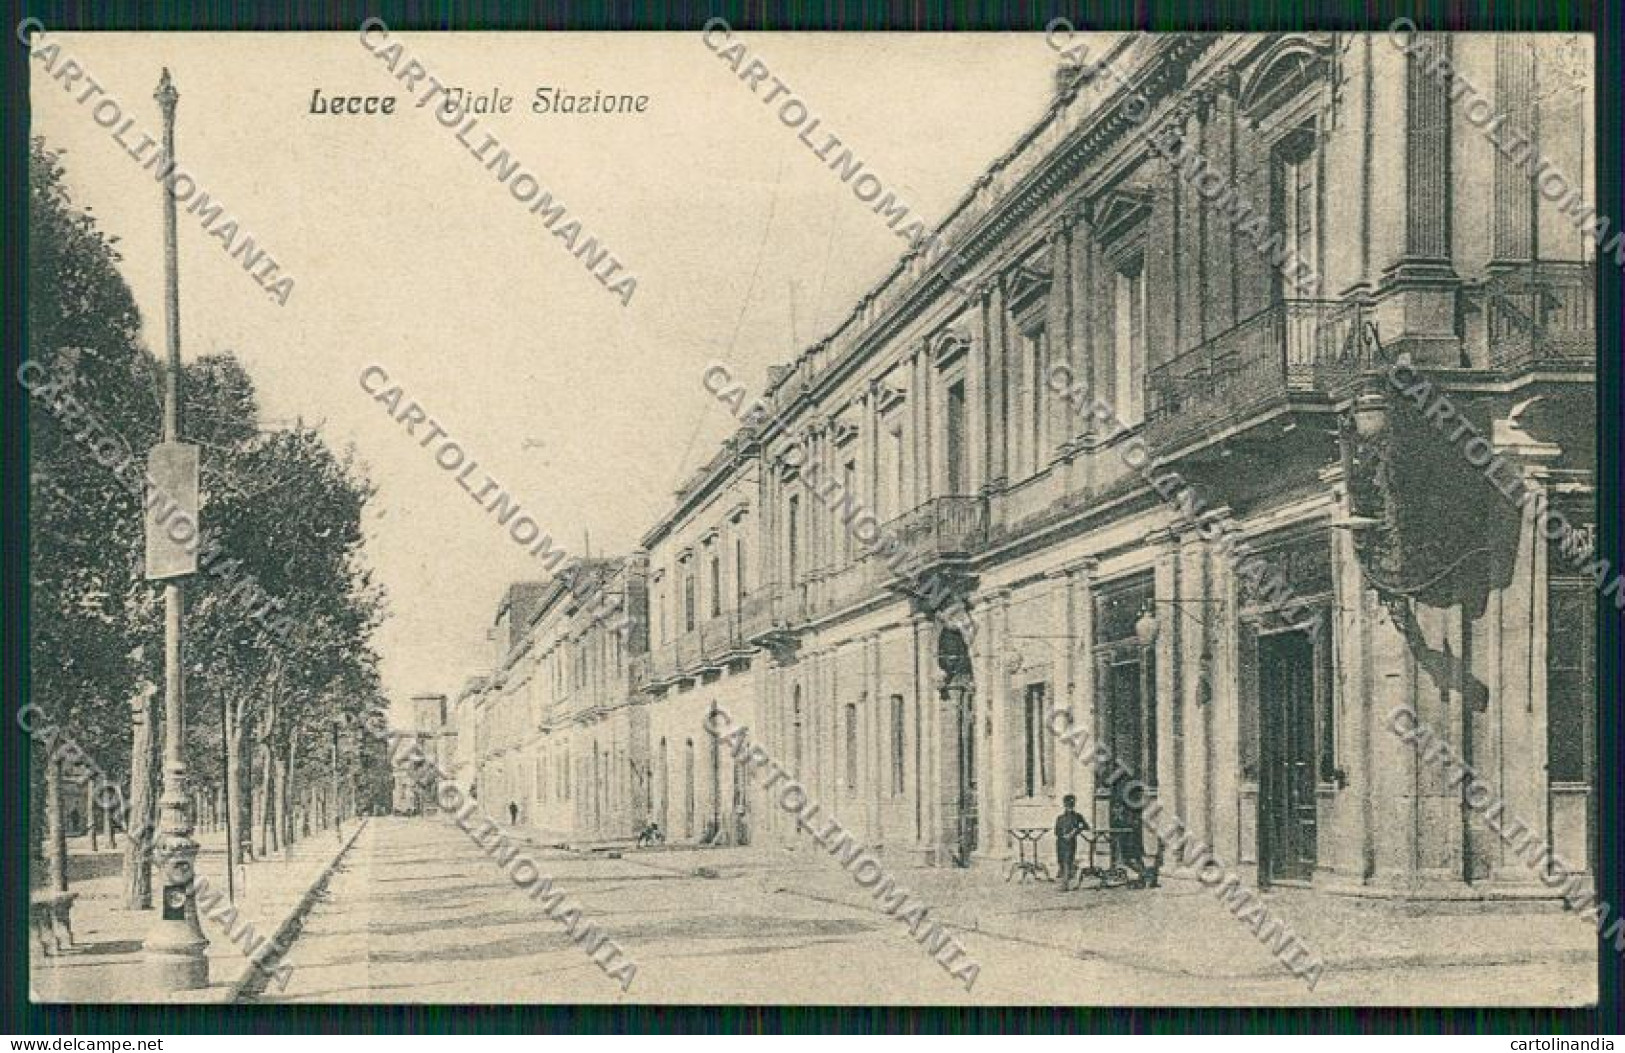 Lecce Città Cartolina QQ4925 - Lecce